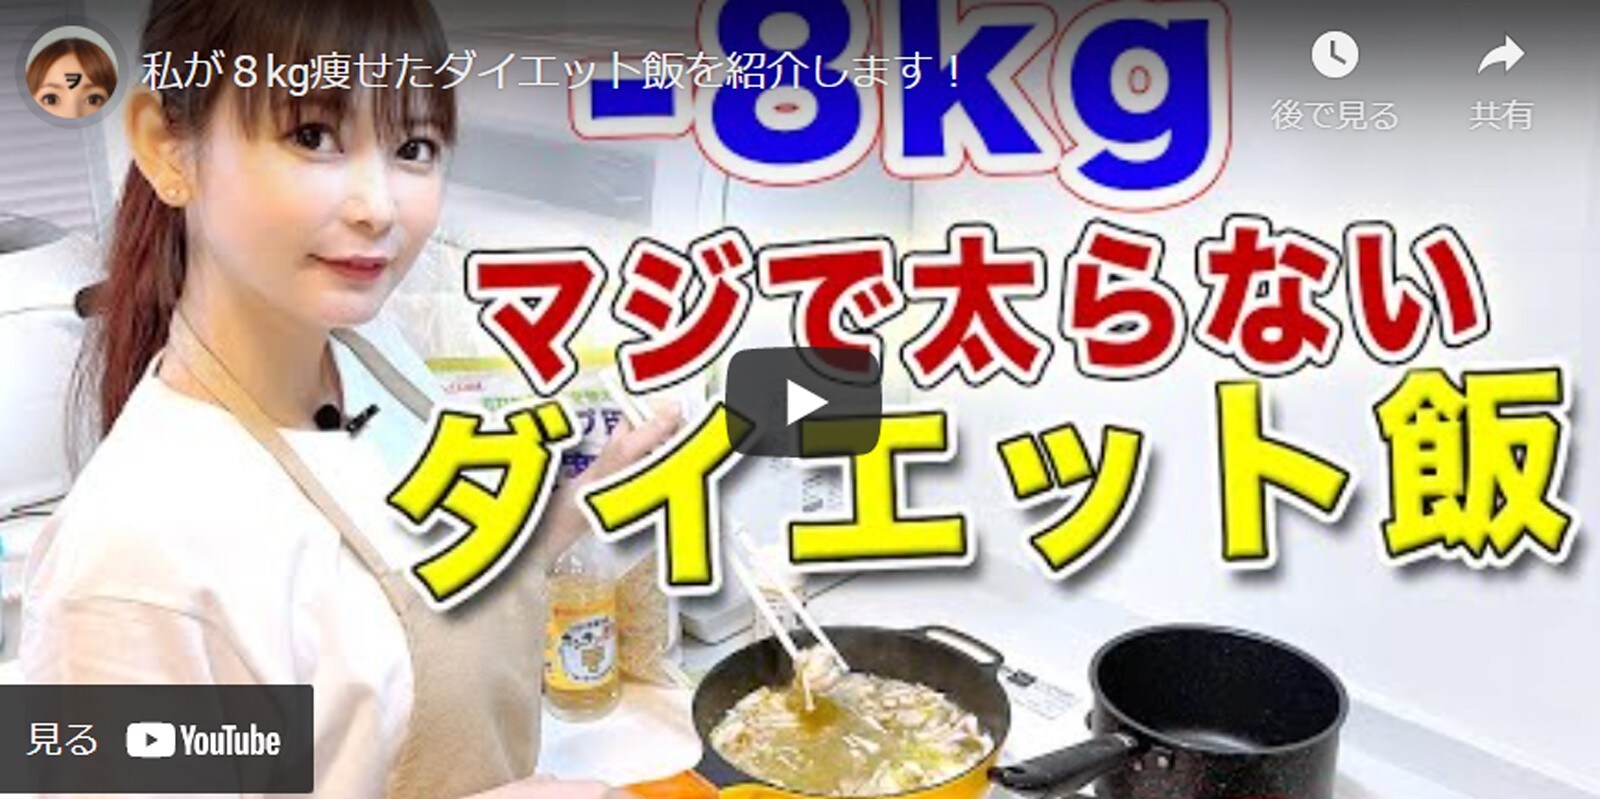 中川翔子、8kg減のダイエット成功飯公開！ 「お肌のツヤが凄すぎ」「マジで簡単で美味しそう！」